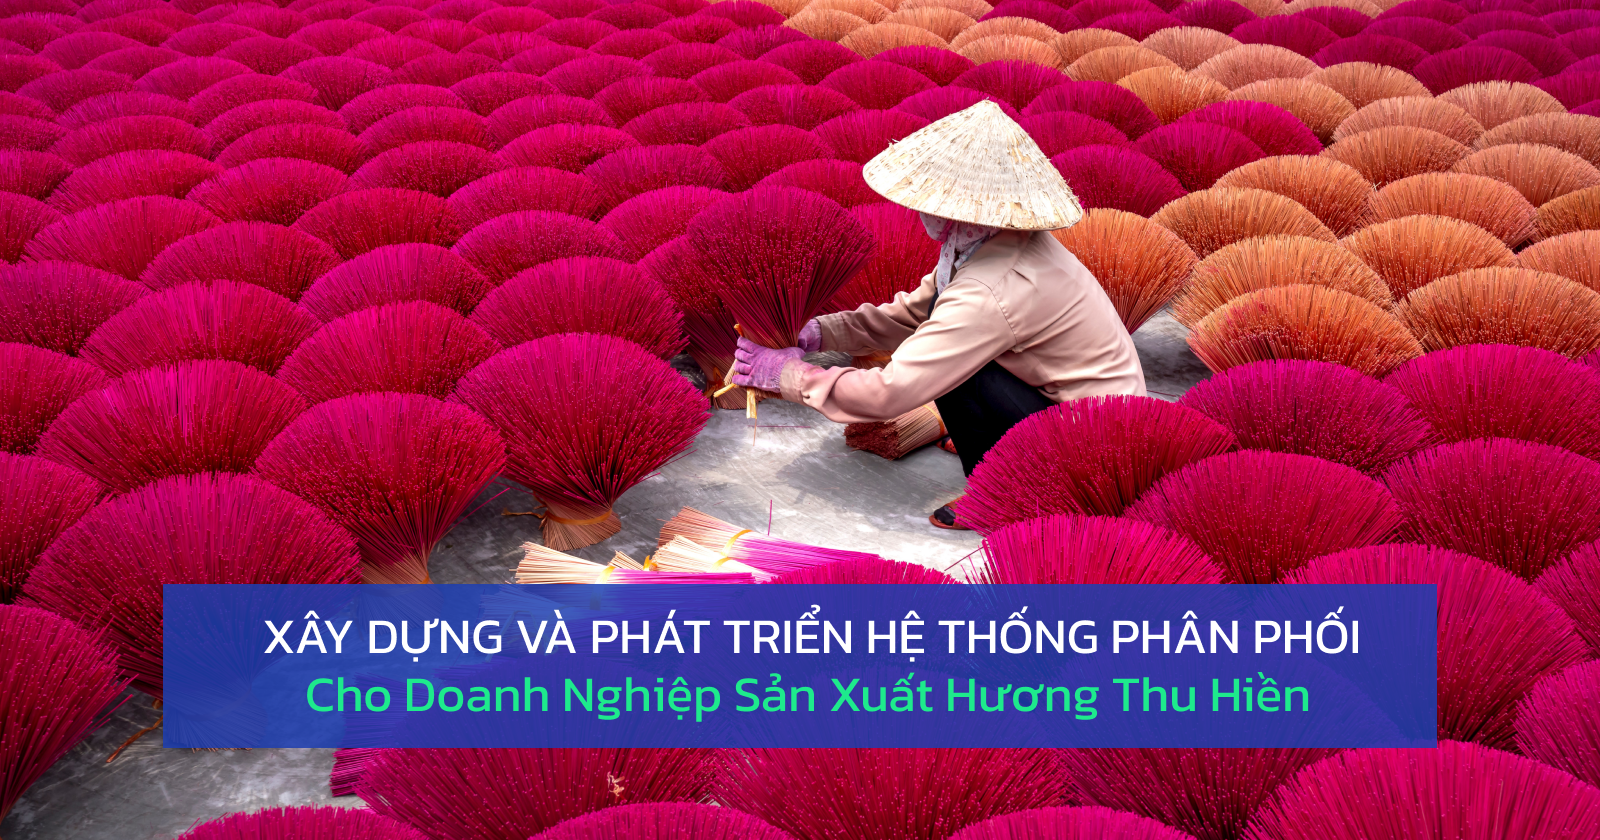 xay-dung-he-thong-phan-phoi-cho-he-thong-cho-doanh-nghiep-san-xuat-huong-thu-hien